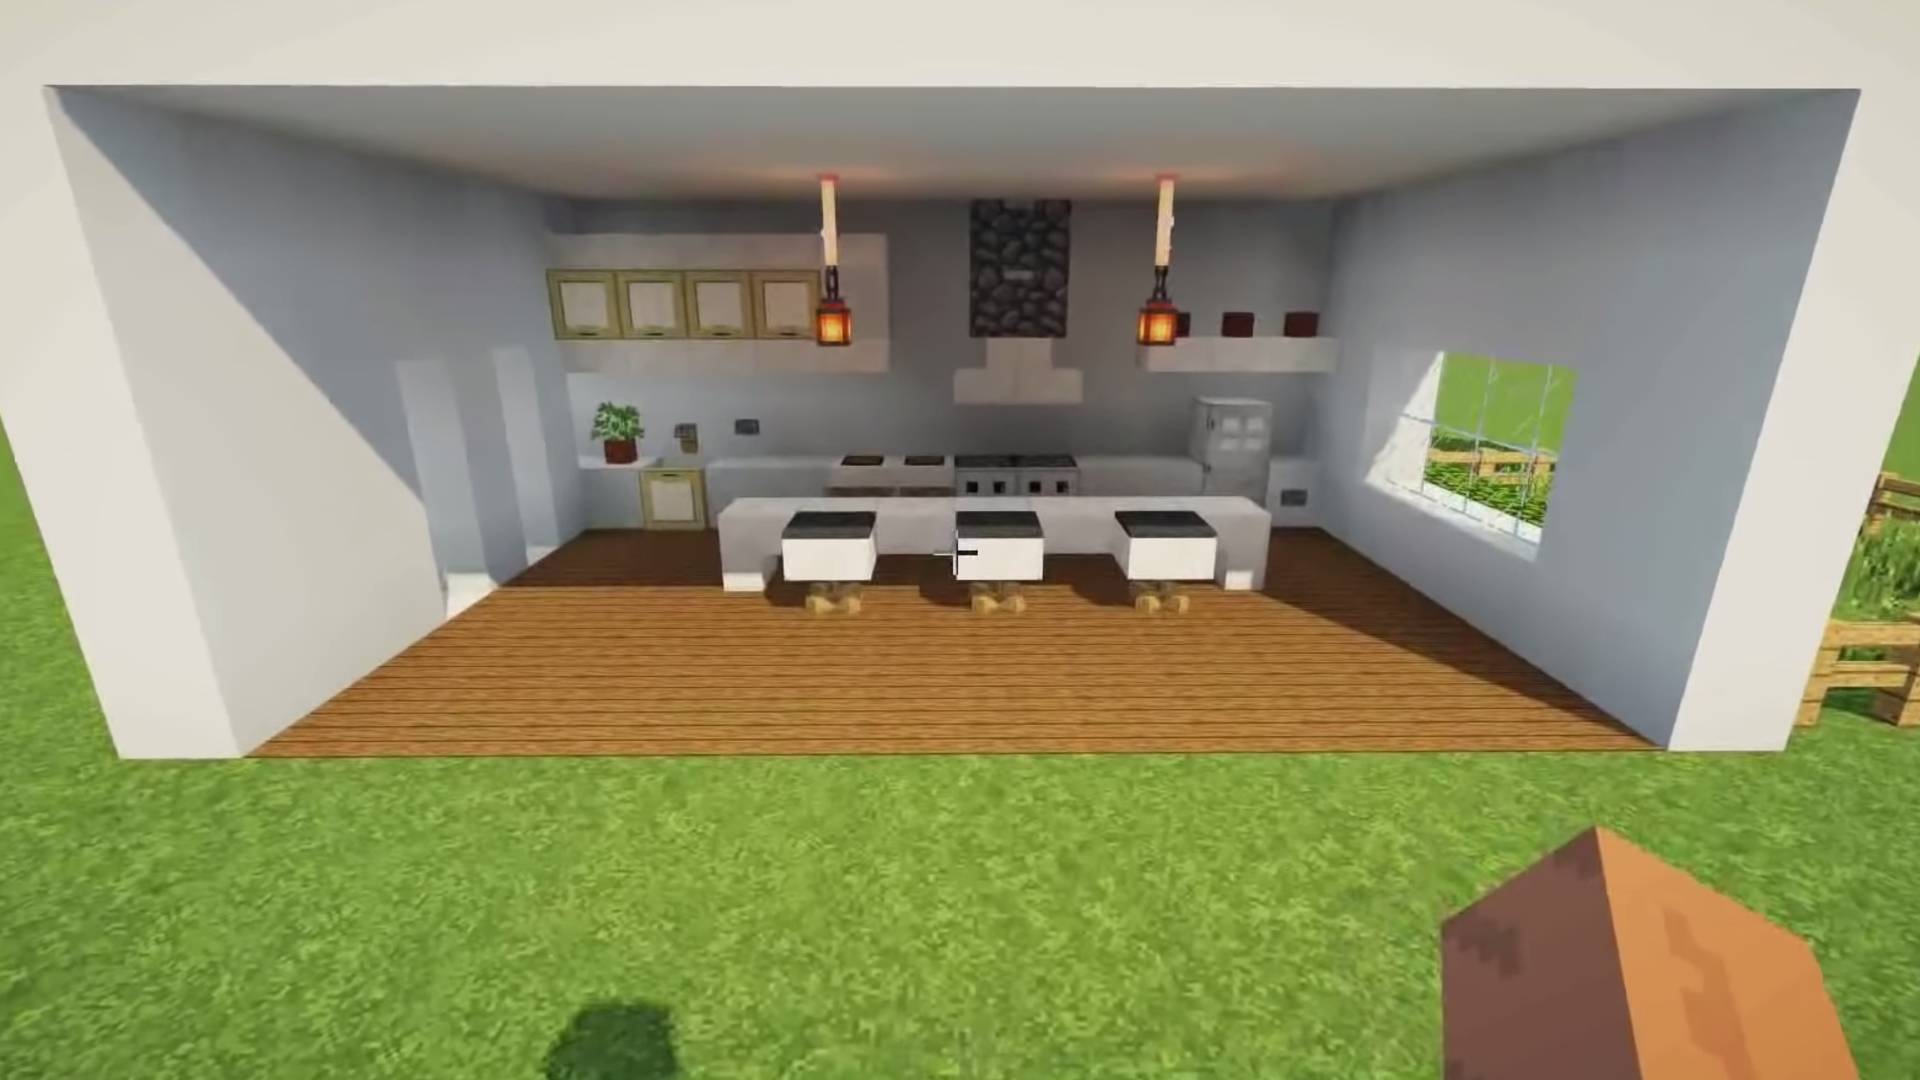 The best Minecraft kitchen ideas